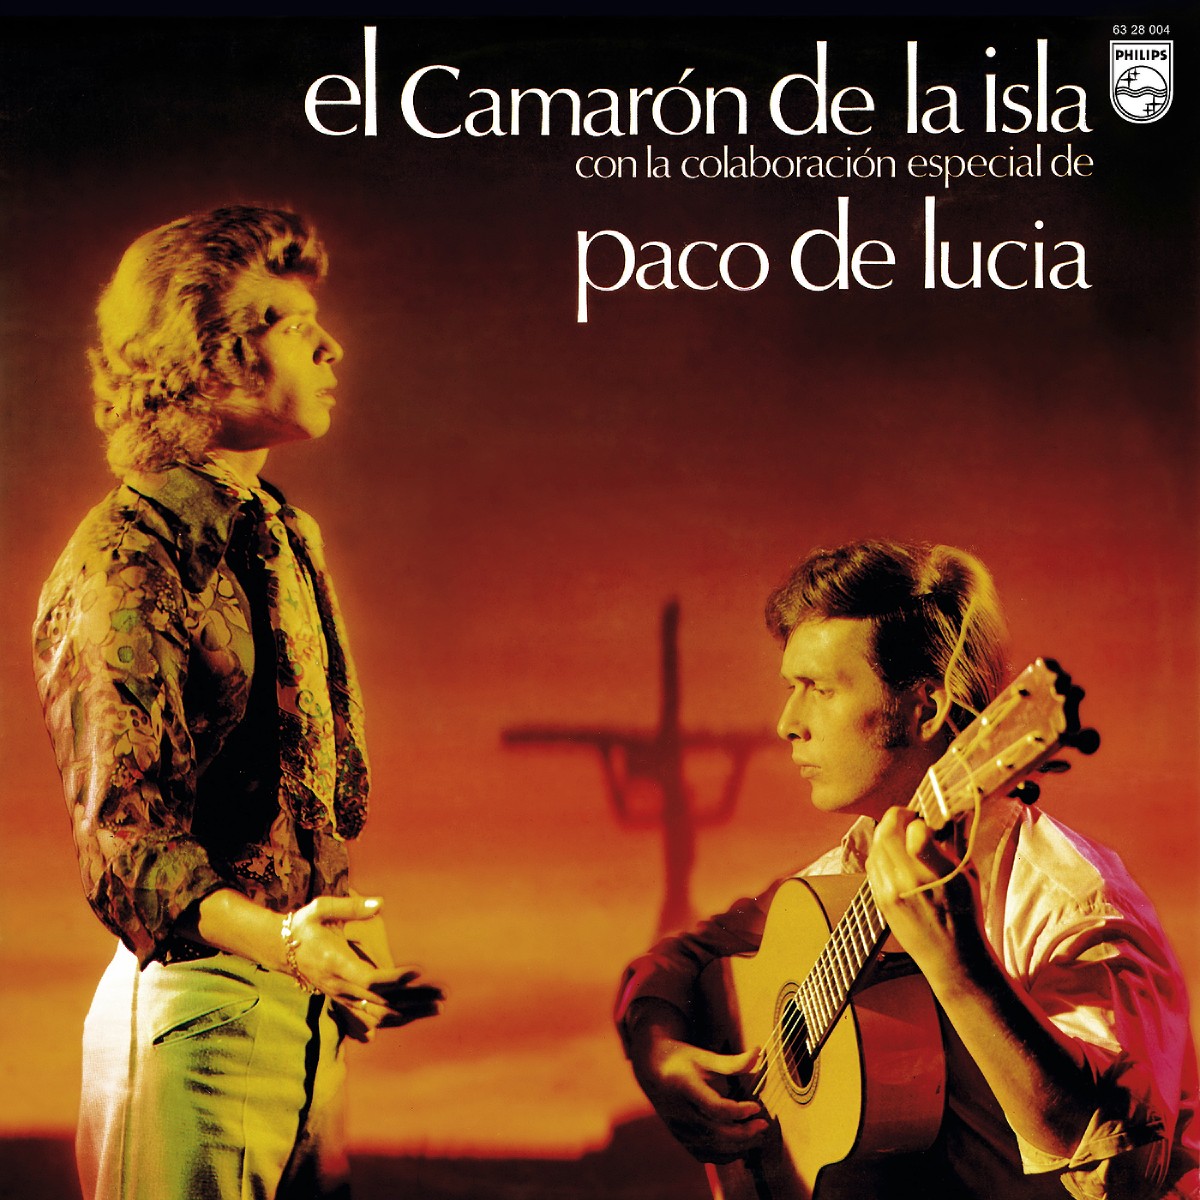 Камарон де ла Исла и Пако де Лусия, альбом